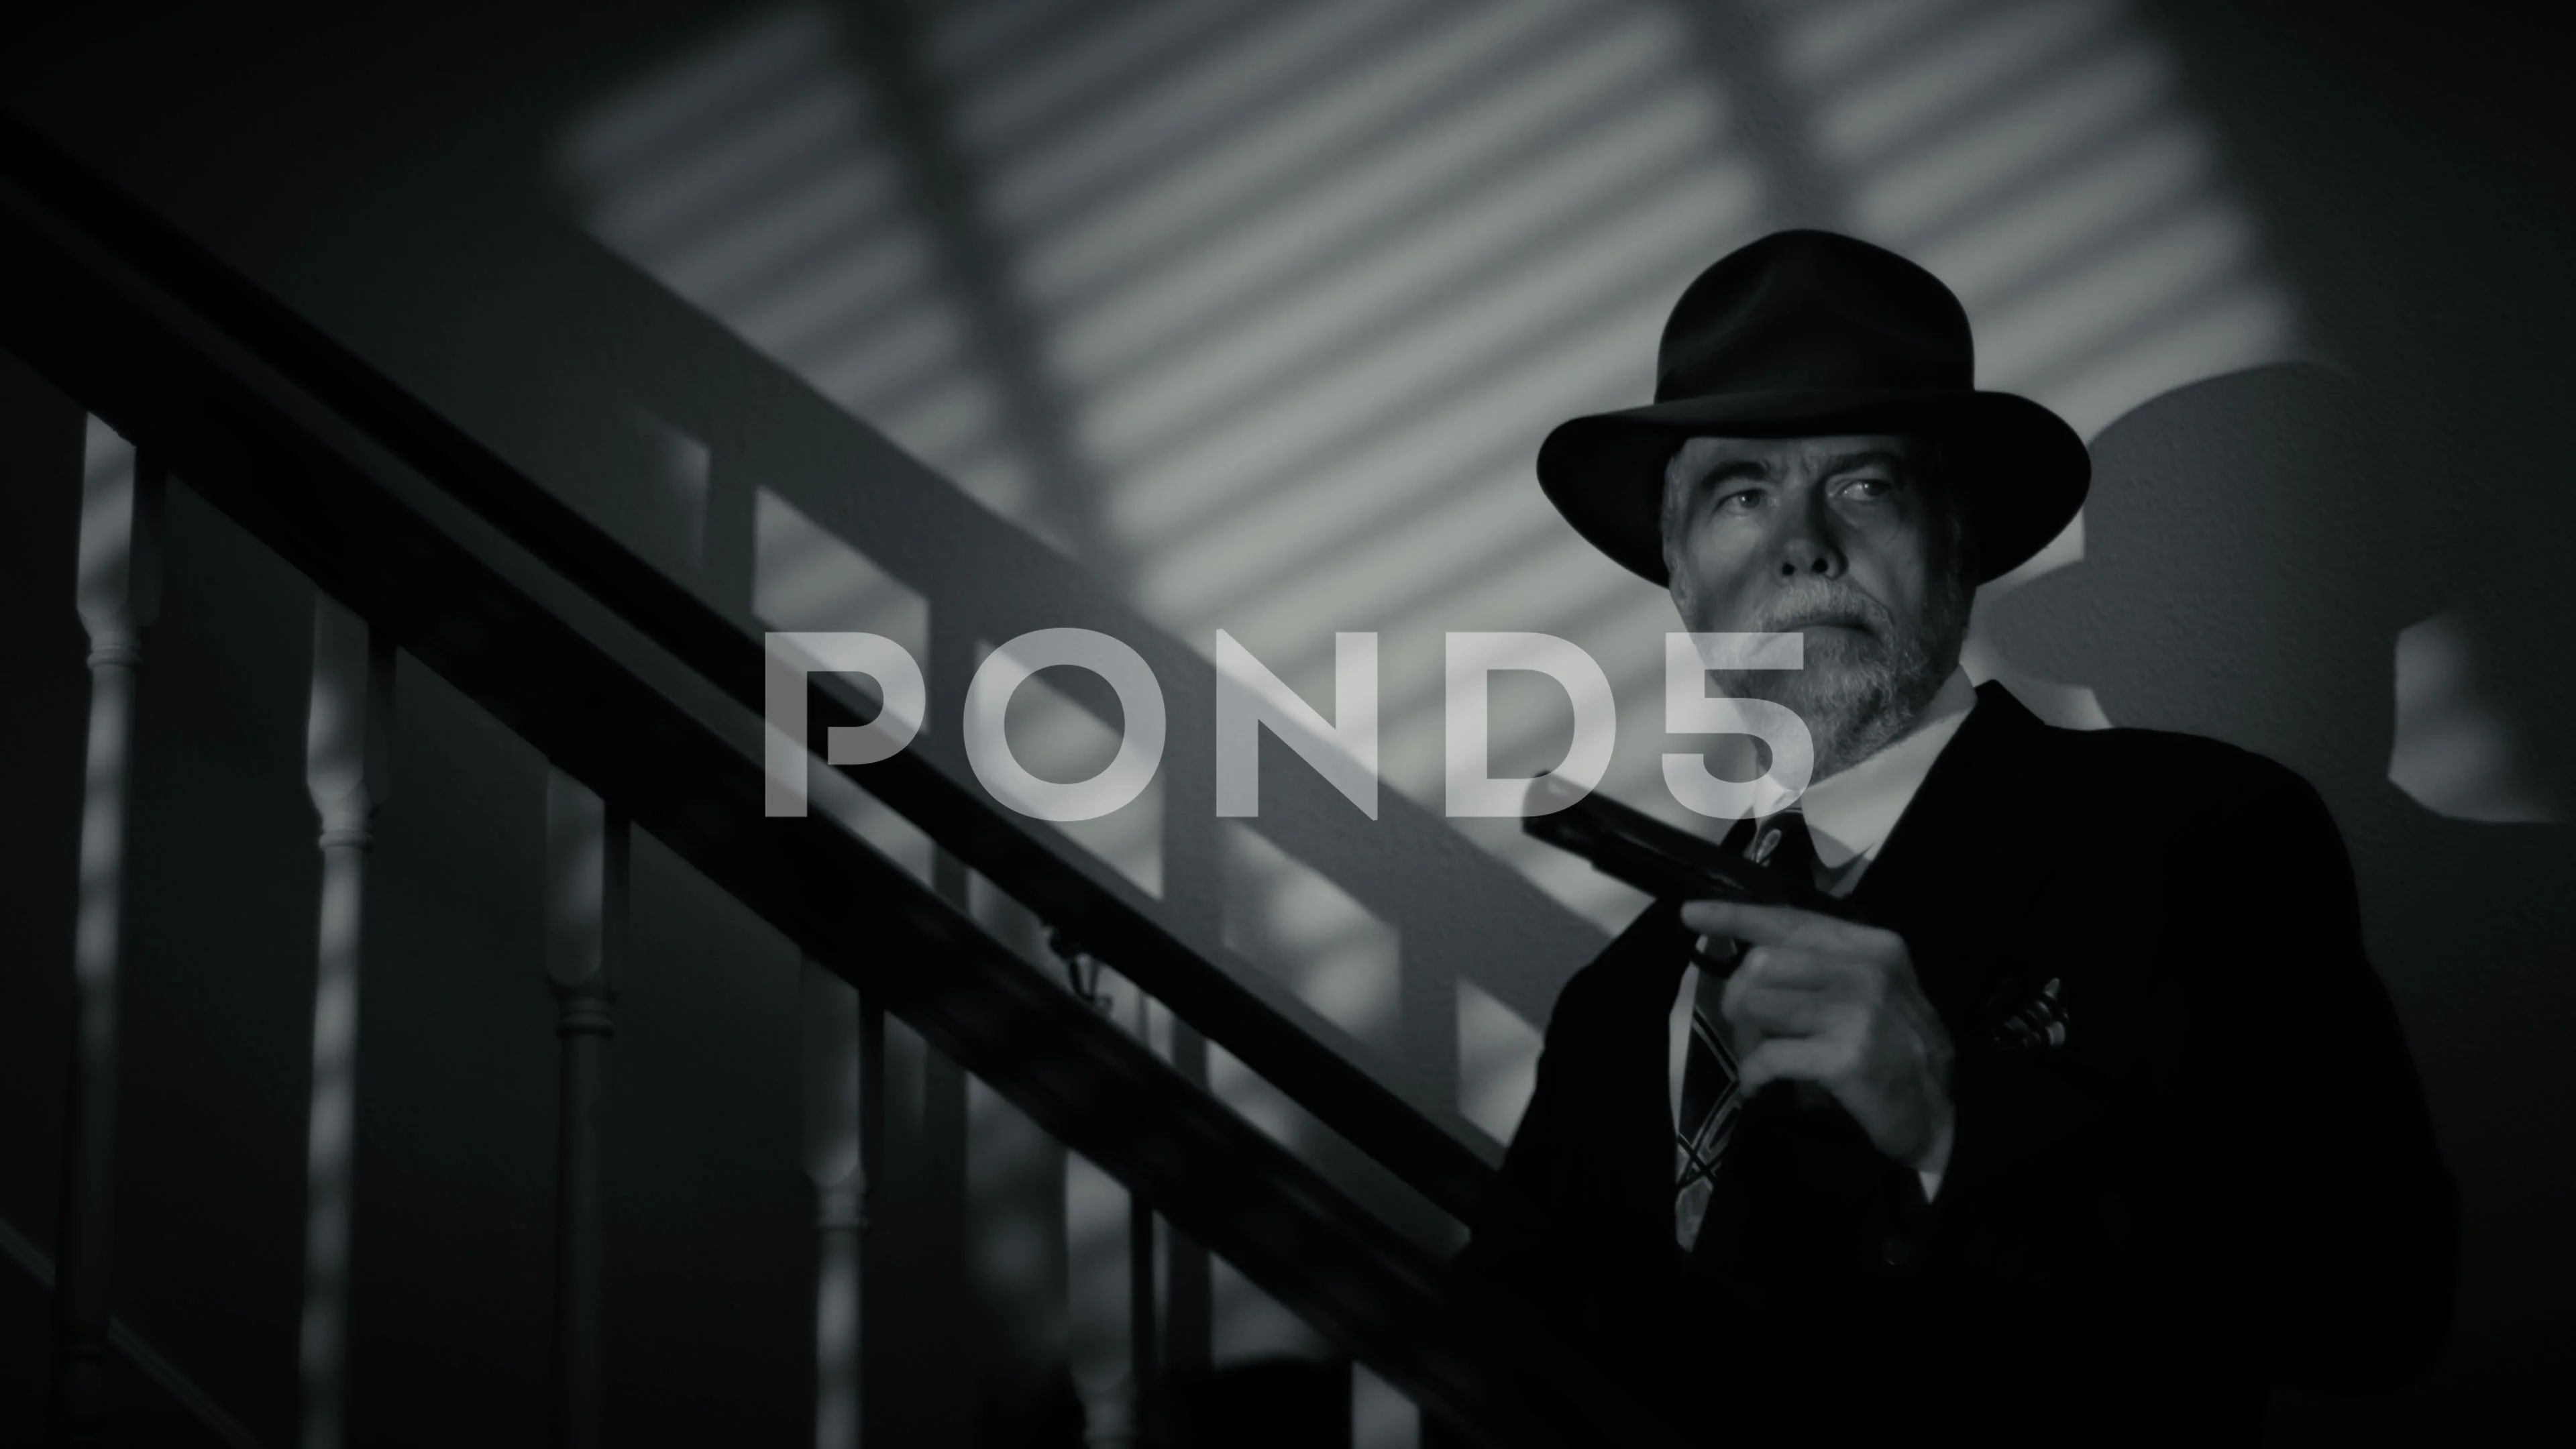 Film Noir  Film noir photography, Film noir, Noir detective